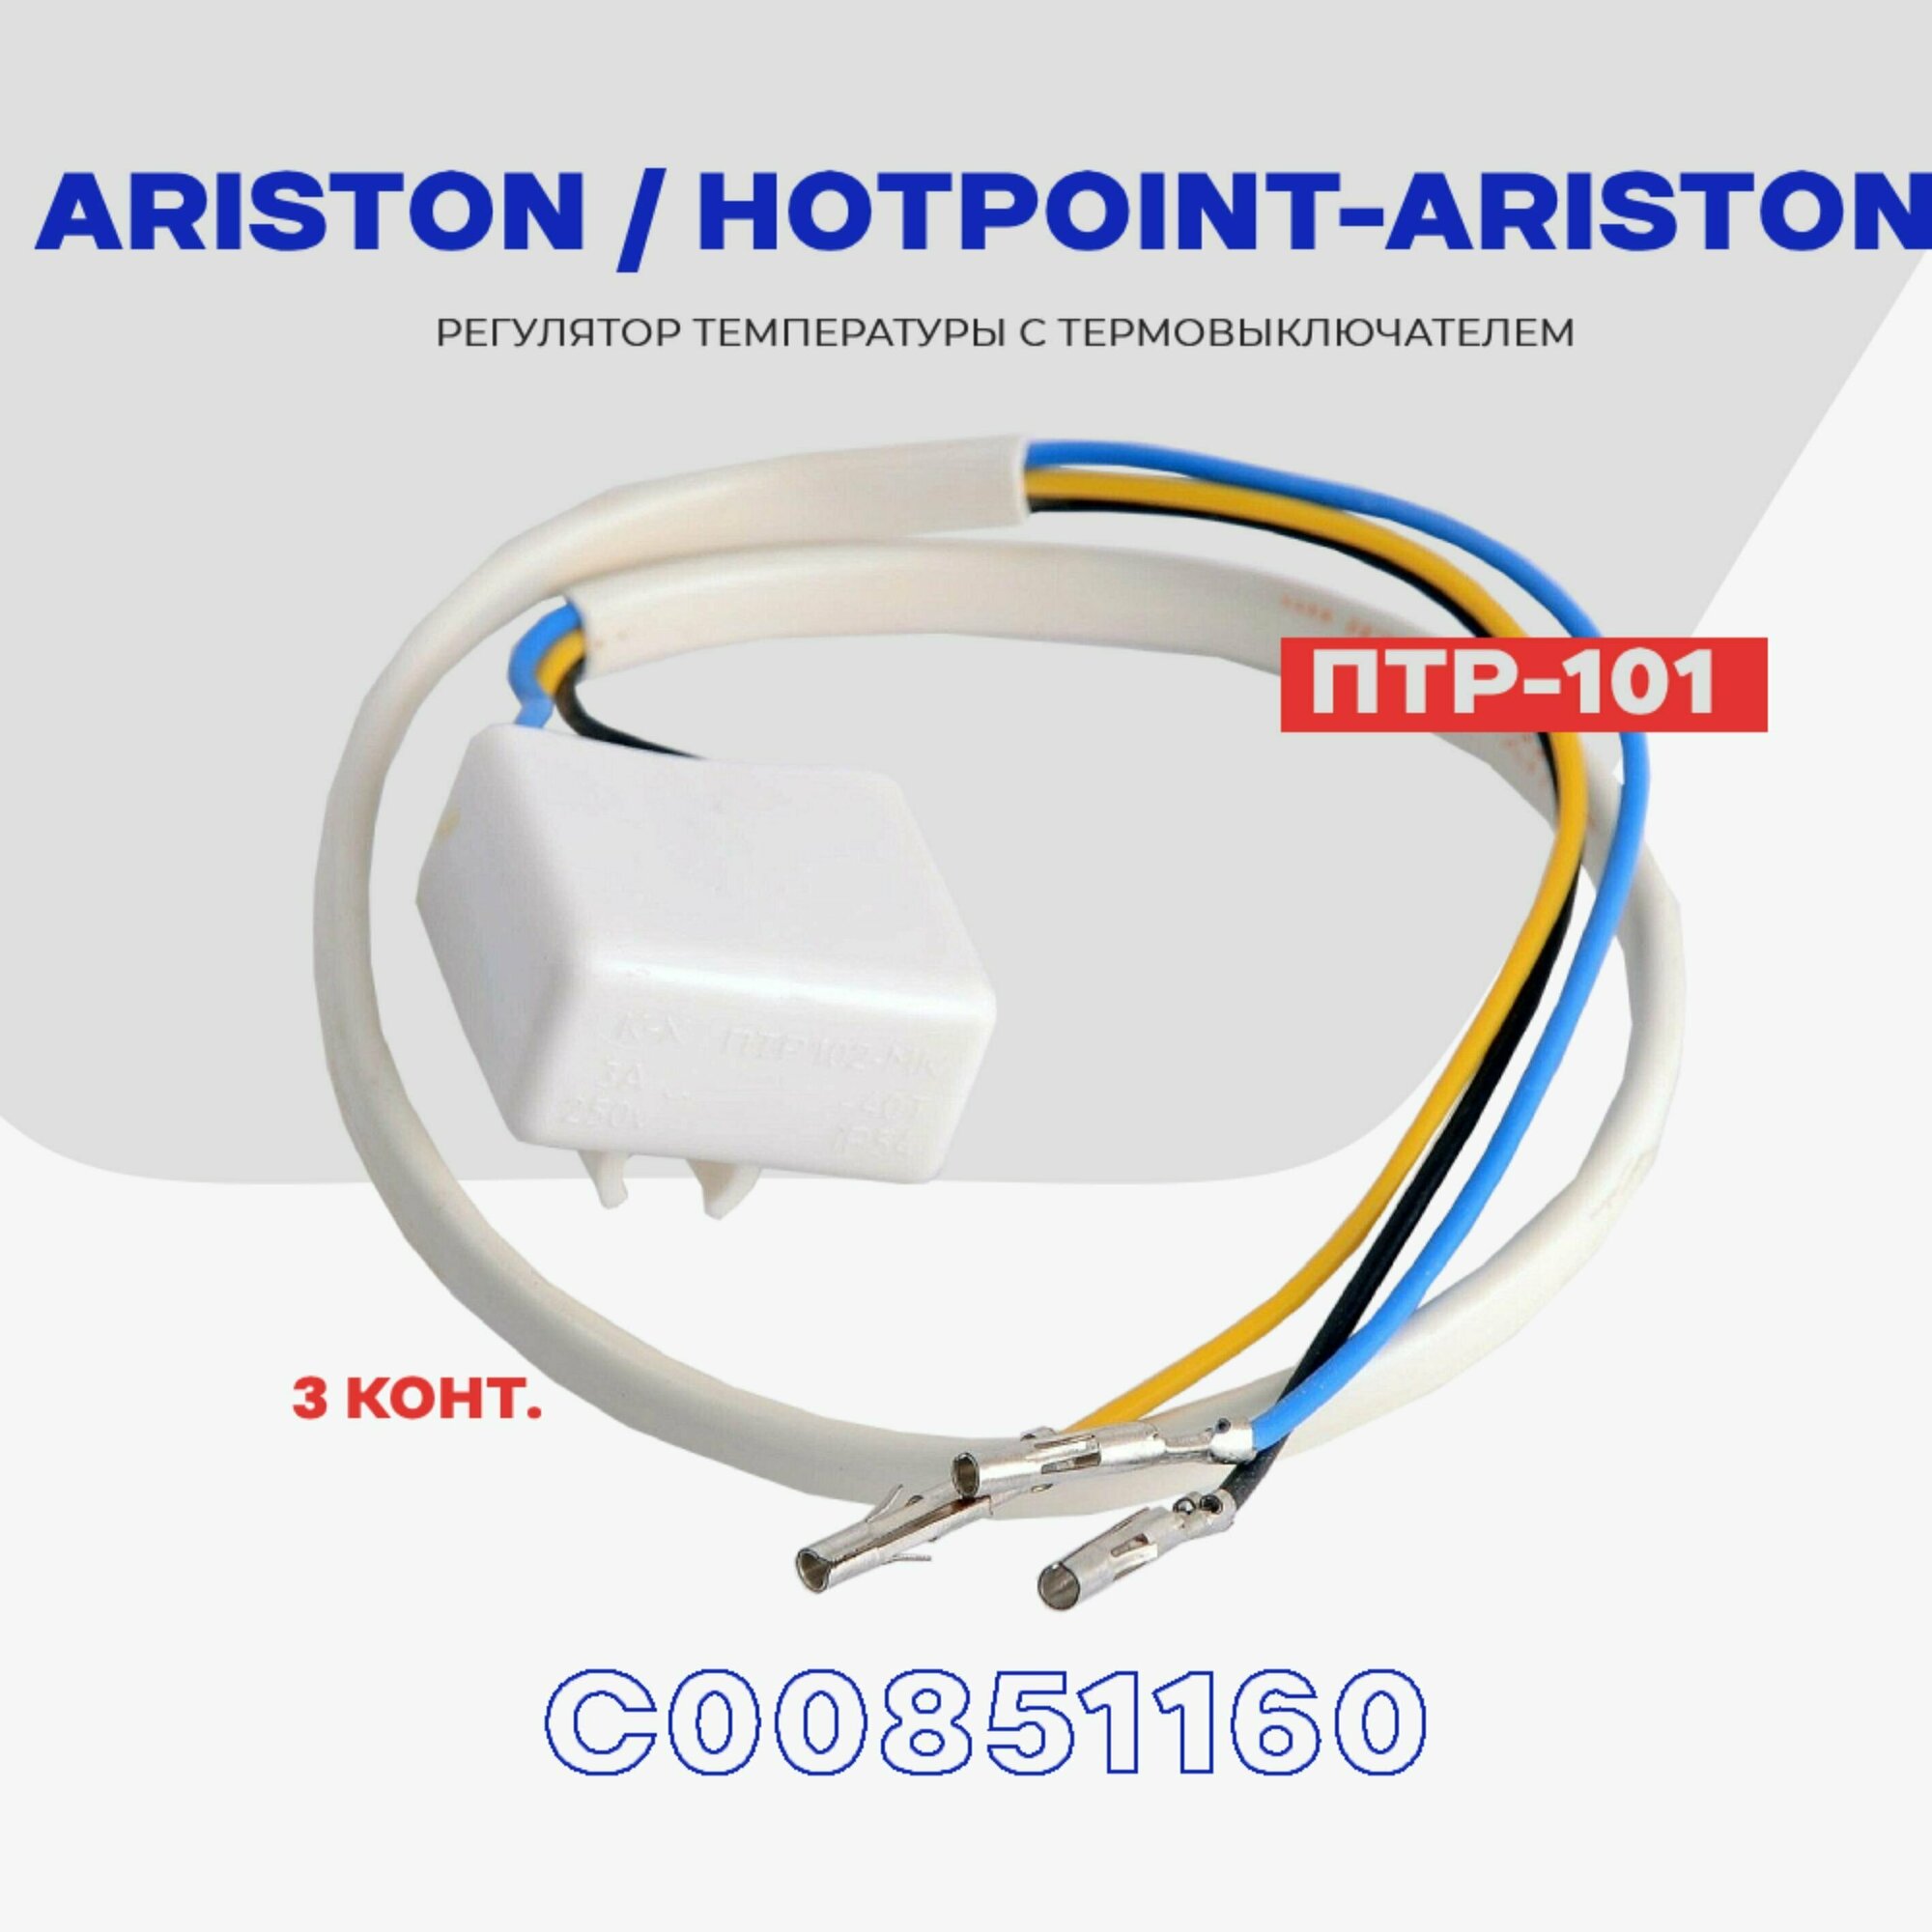 Тепловое реле для холодильника Ariston, Hotpoint-Ariston ПТР-101 (С00851160) / Термопредохранитель оттайки на 3 контакта NO Frost